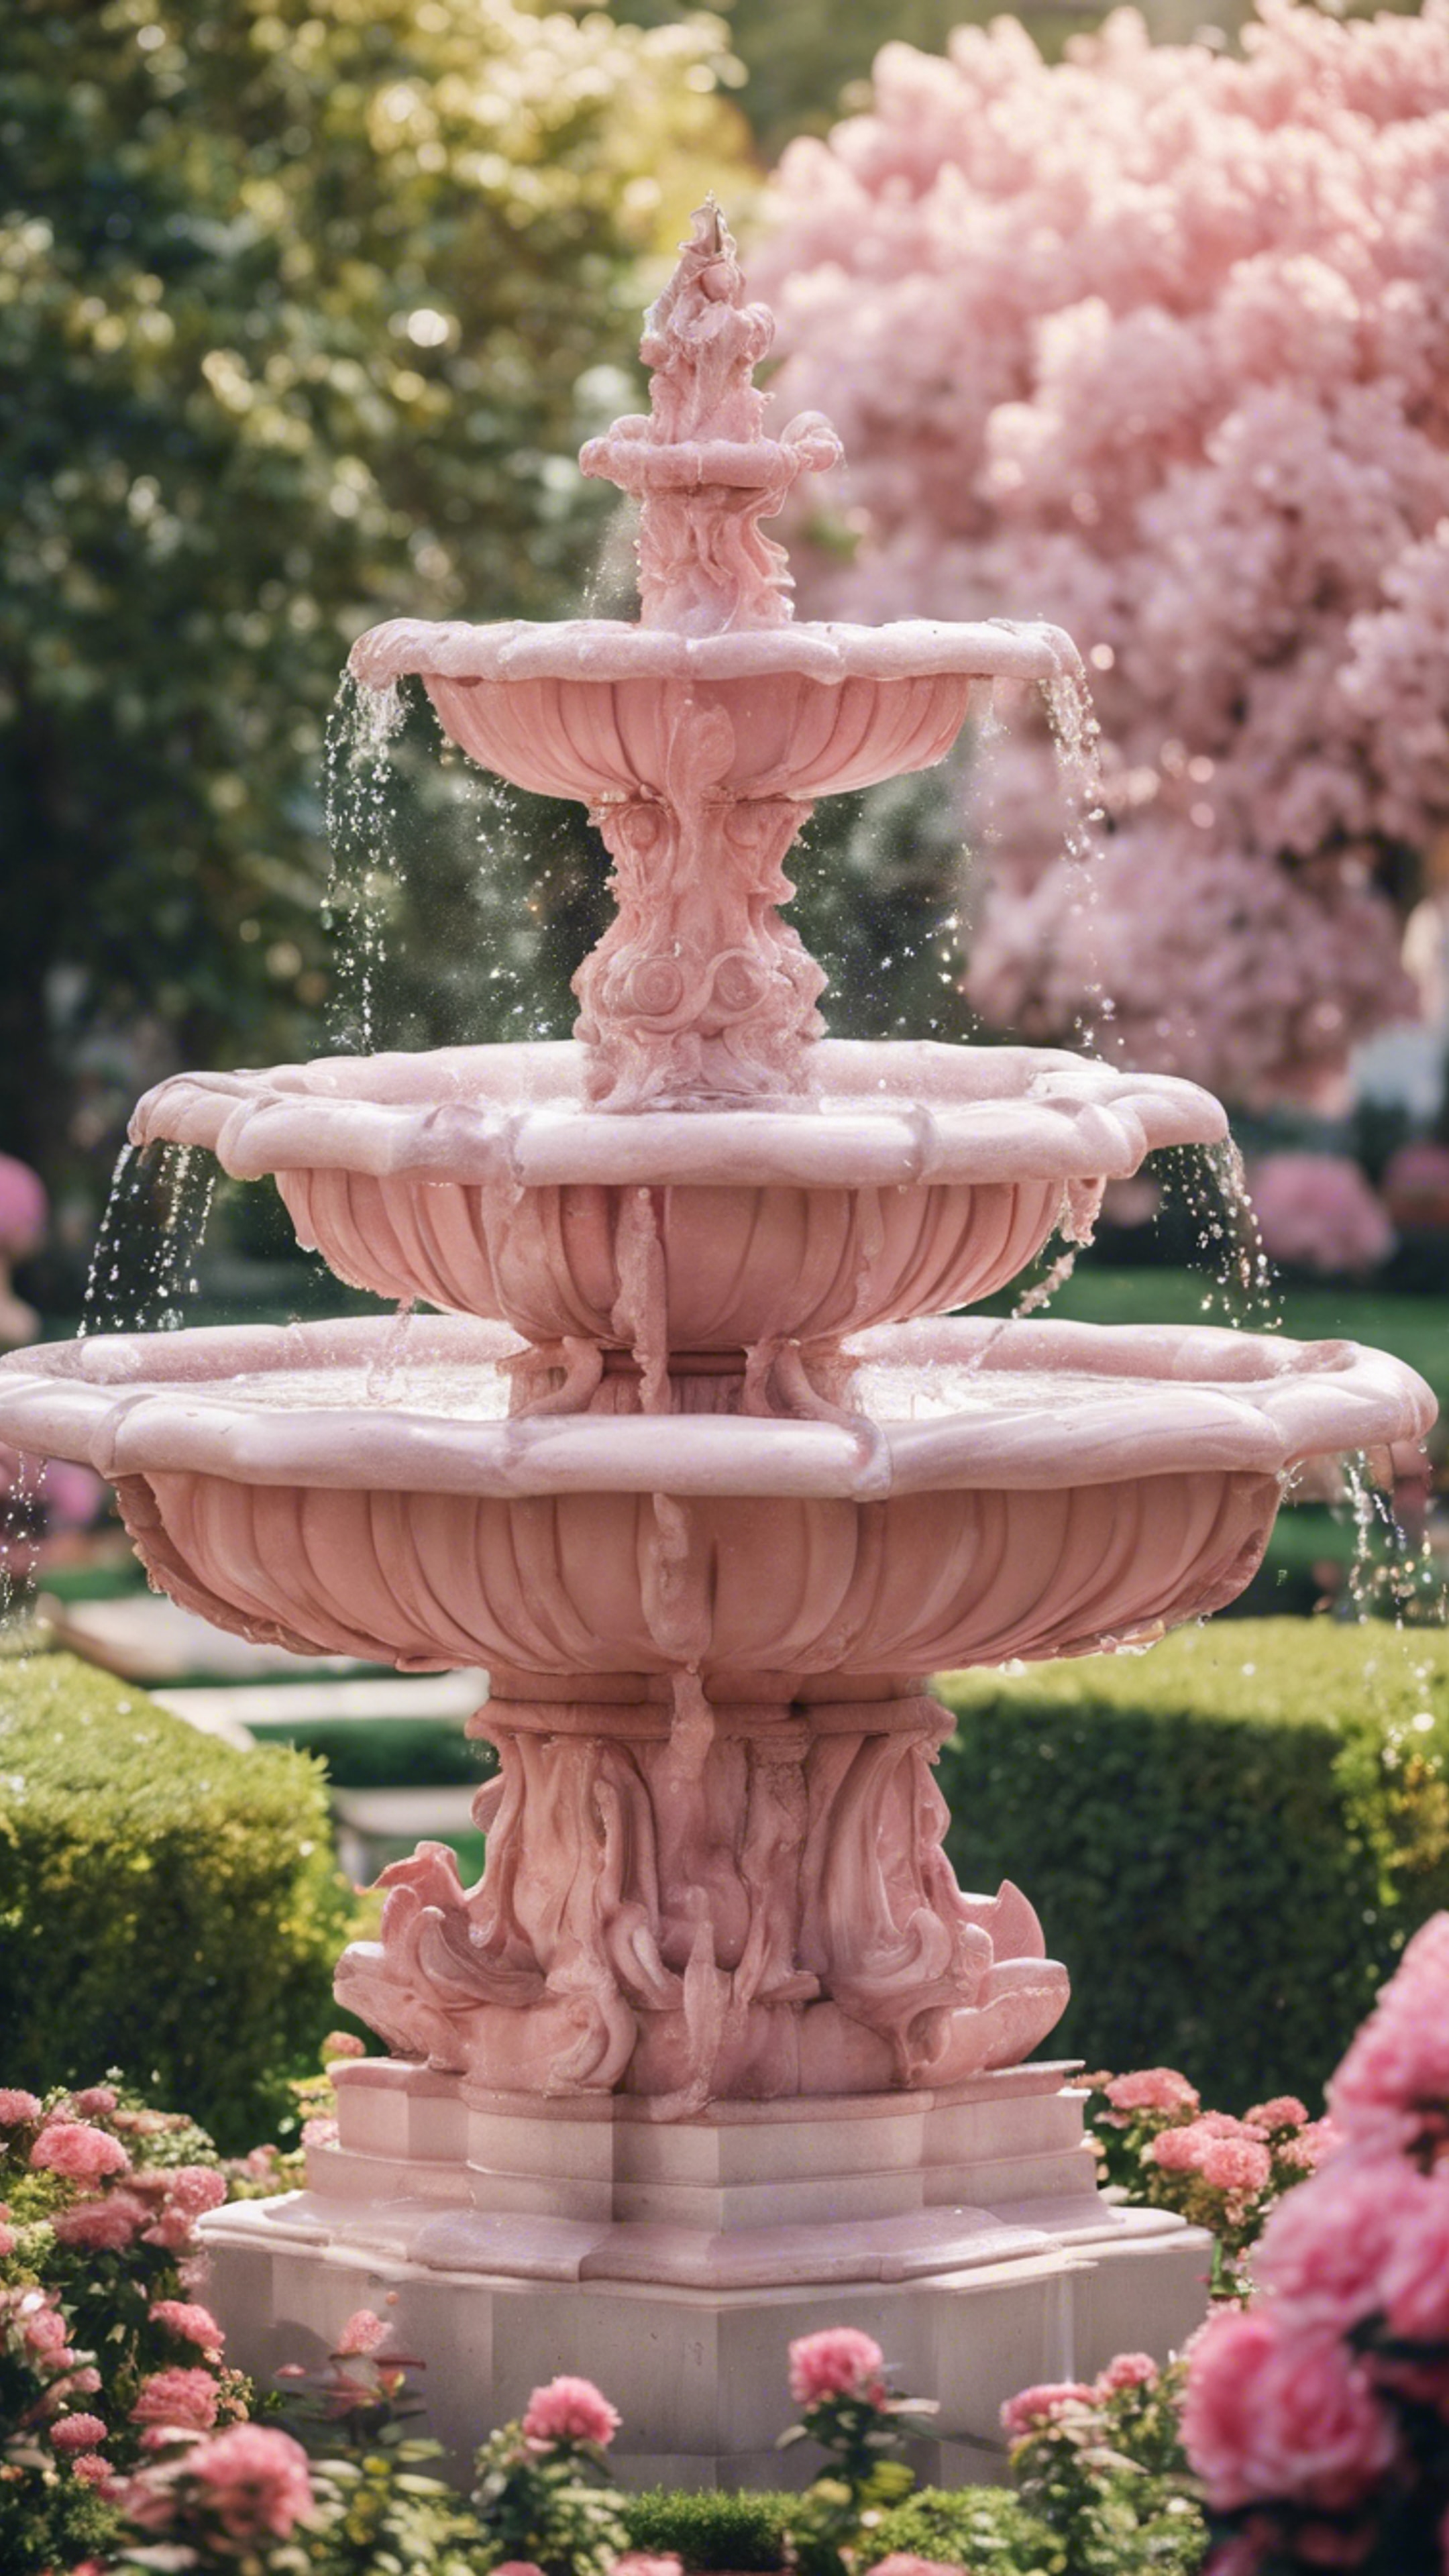 A fountain made of pink marble in an elegant flower garden. Wallpaper[73b566b49d564d04a87c]